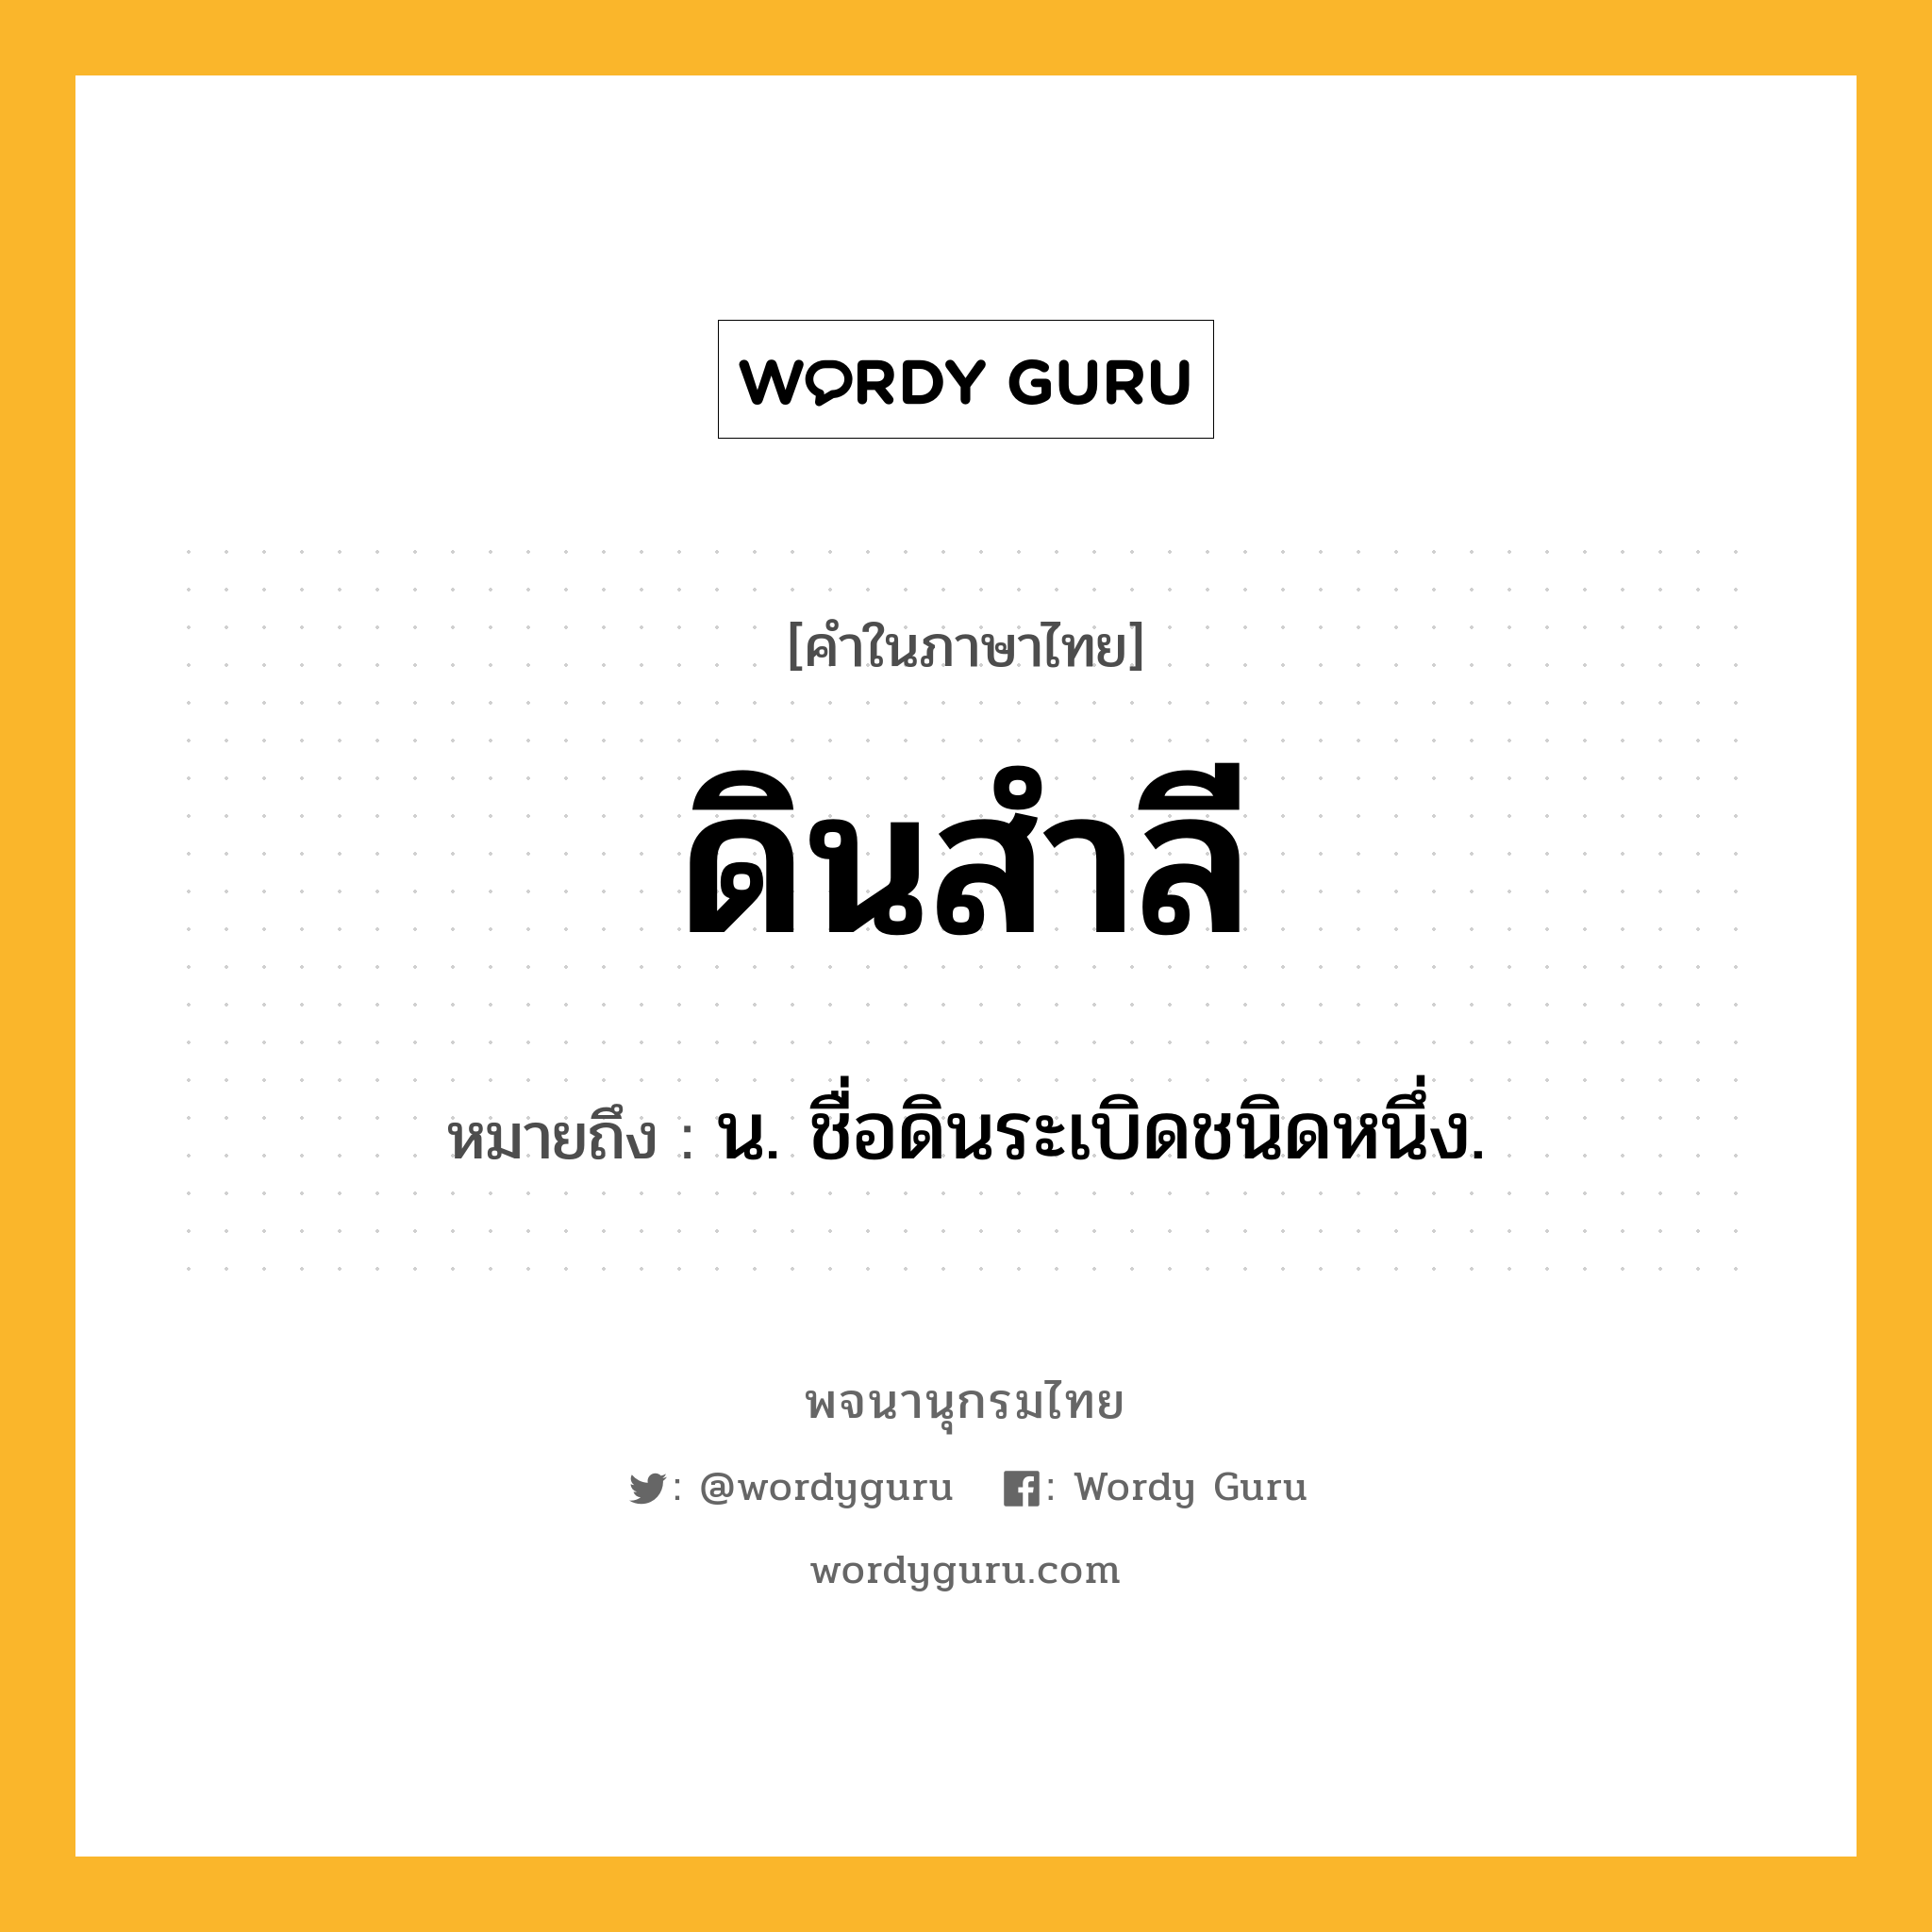 ดินสำลี ความหมาย หมายถึงอะไร?, คำในภาษาไทย ดินสำลี หมายถึง น. ชื่อดินระเบิดชนิดหนึ่ง.